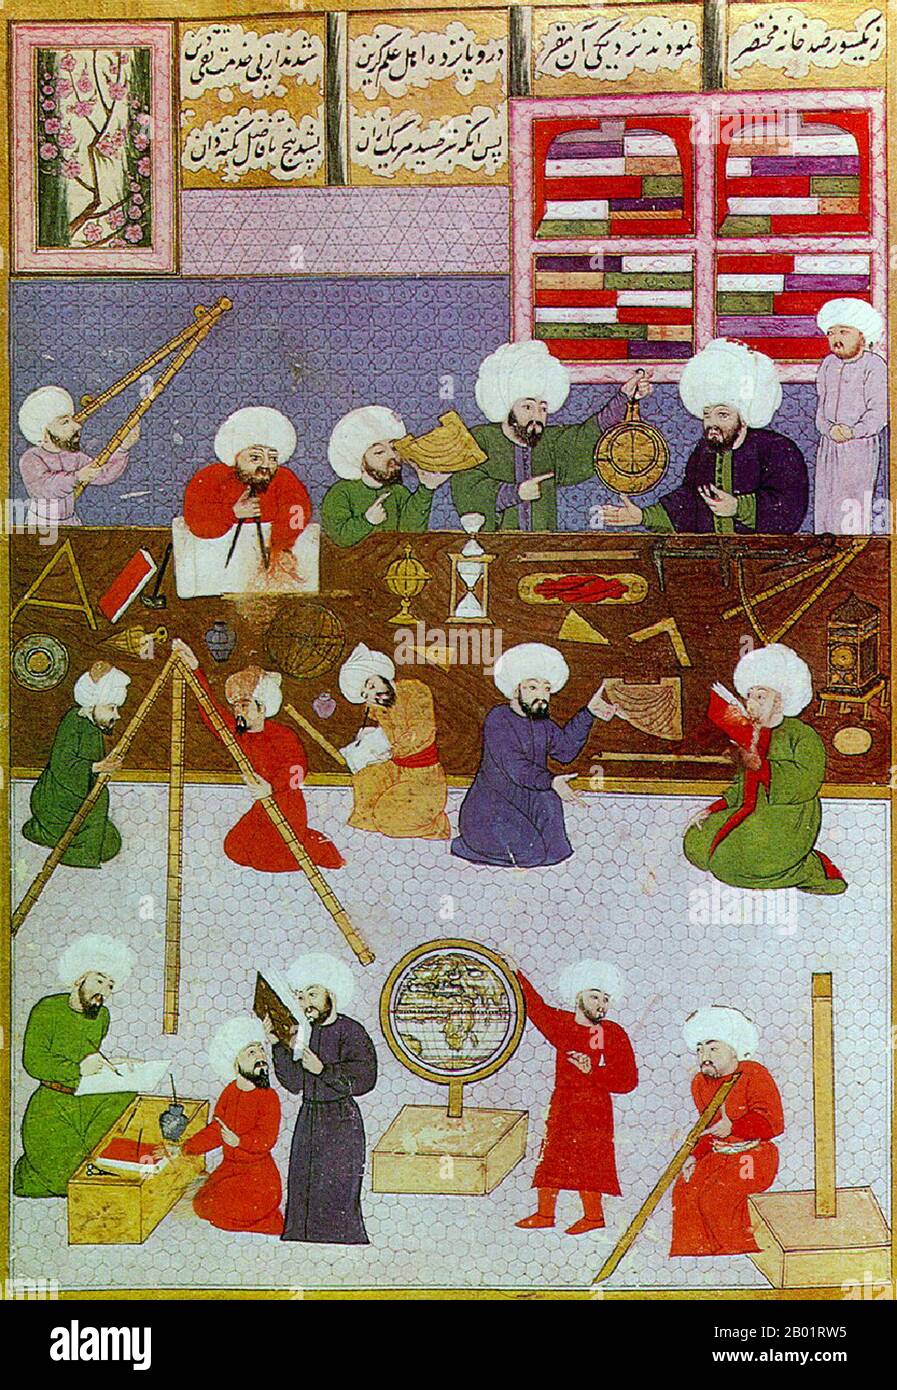 Türkei: Osmanische Astronomen arbeiten um Taqi al-DIN am Istanbuler Observatorium. Miniaturgemälde aus der Shahinshah-nama (Geschichte des Königs der Könige), ein episches Gedicht von Ala ad-DIN Mansur-Shirazi, um 1574-1595. Taqi al-DIN Muhammad ibn Ma'ruf al-Shami al-Asadi (1526–1585) war ein osmanischer türkischer Polymath. Er war Autor von mehr als 90 Büchern über eine Vielzahl von Themen, darunter Astronomie, Uhren, Ingenieurwesen, Mathematik, Mechanik, Optik und Naturphilosophie. Stockfoto